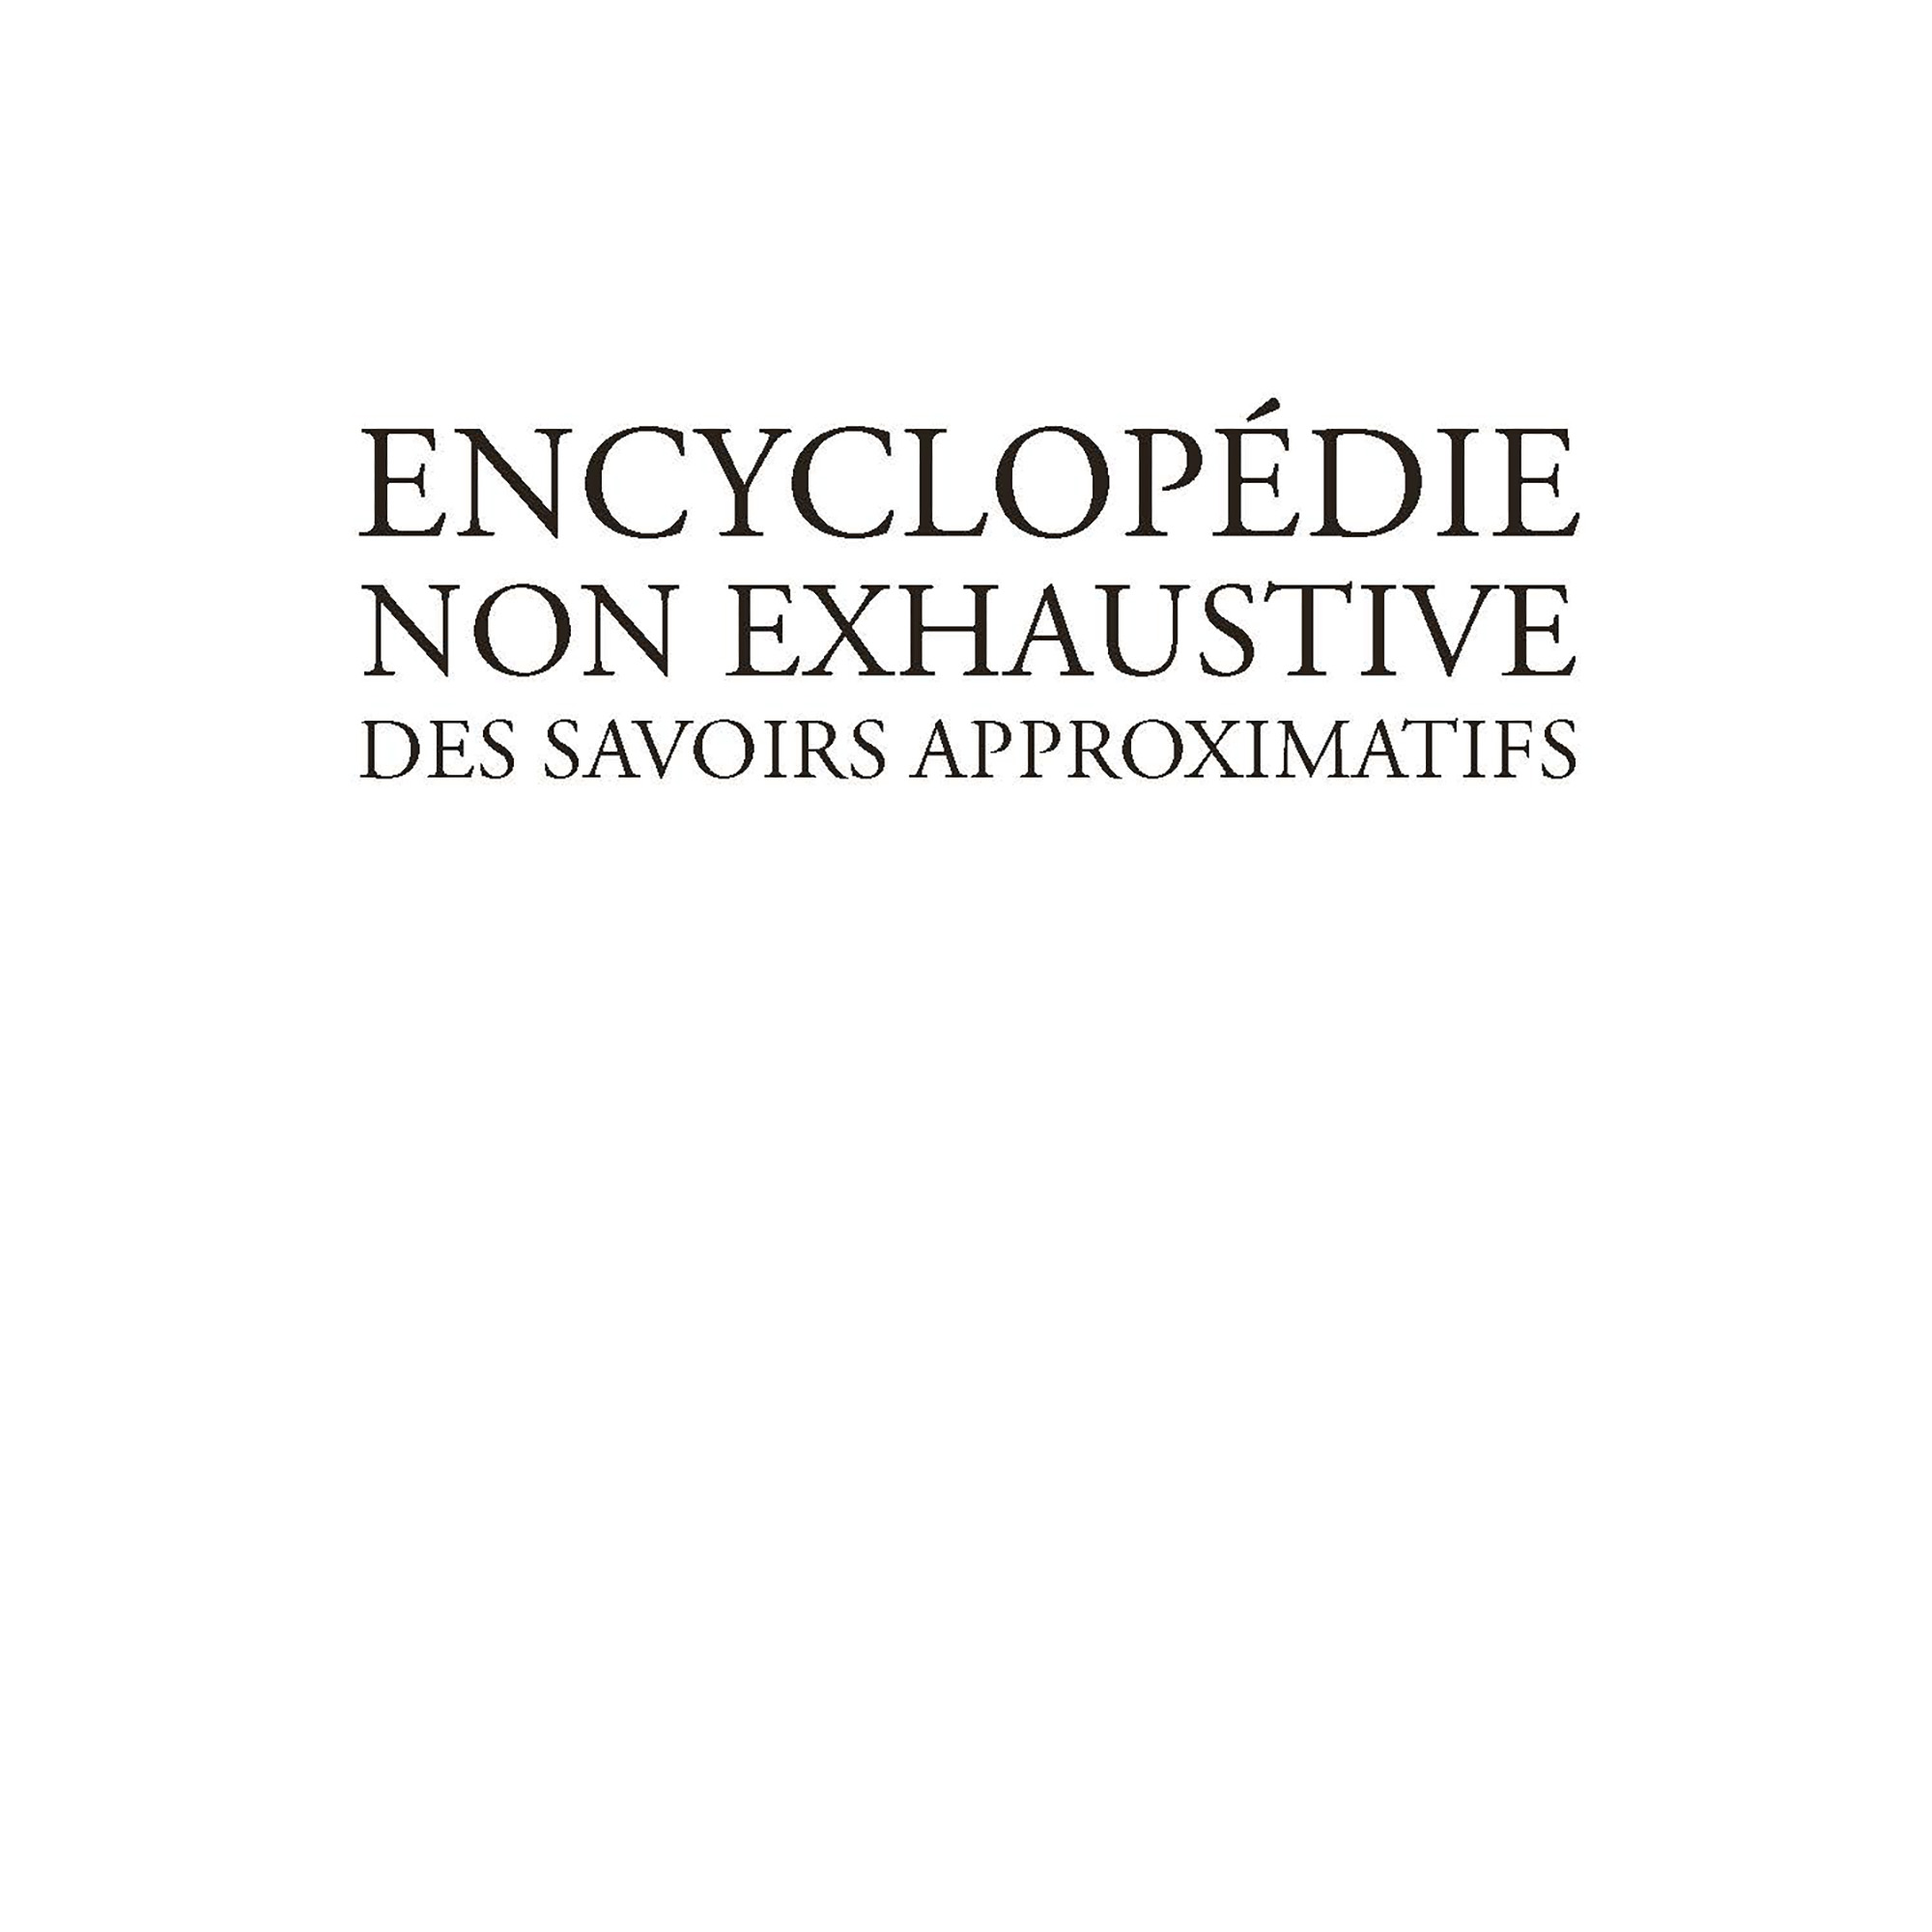   Encyclopédie non exhaustive des savoirs approximatifs